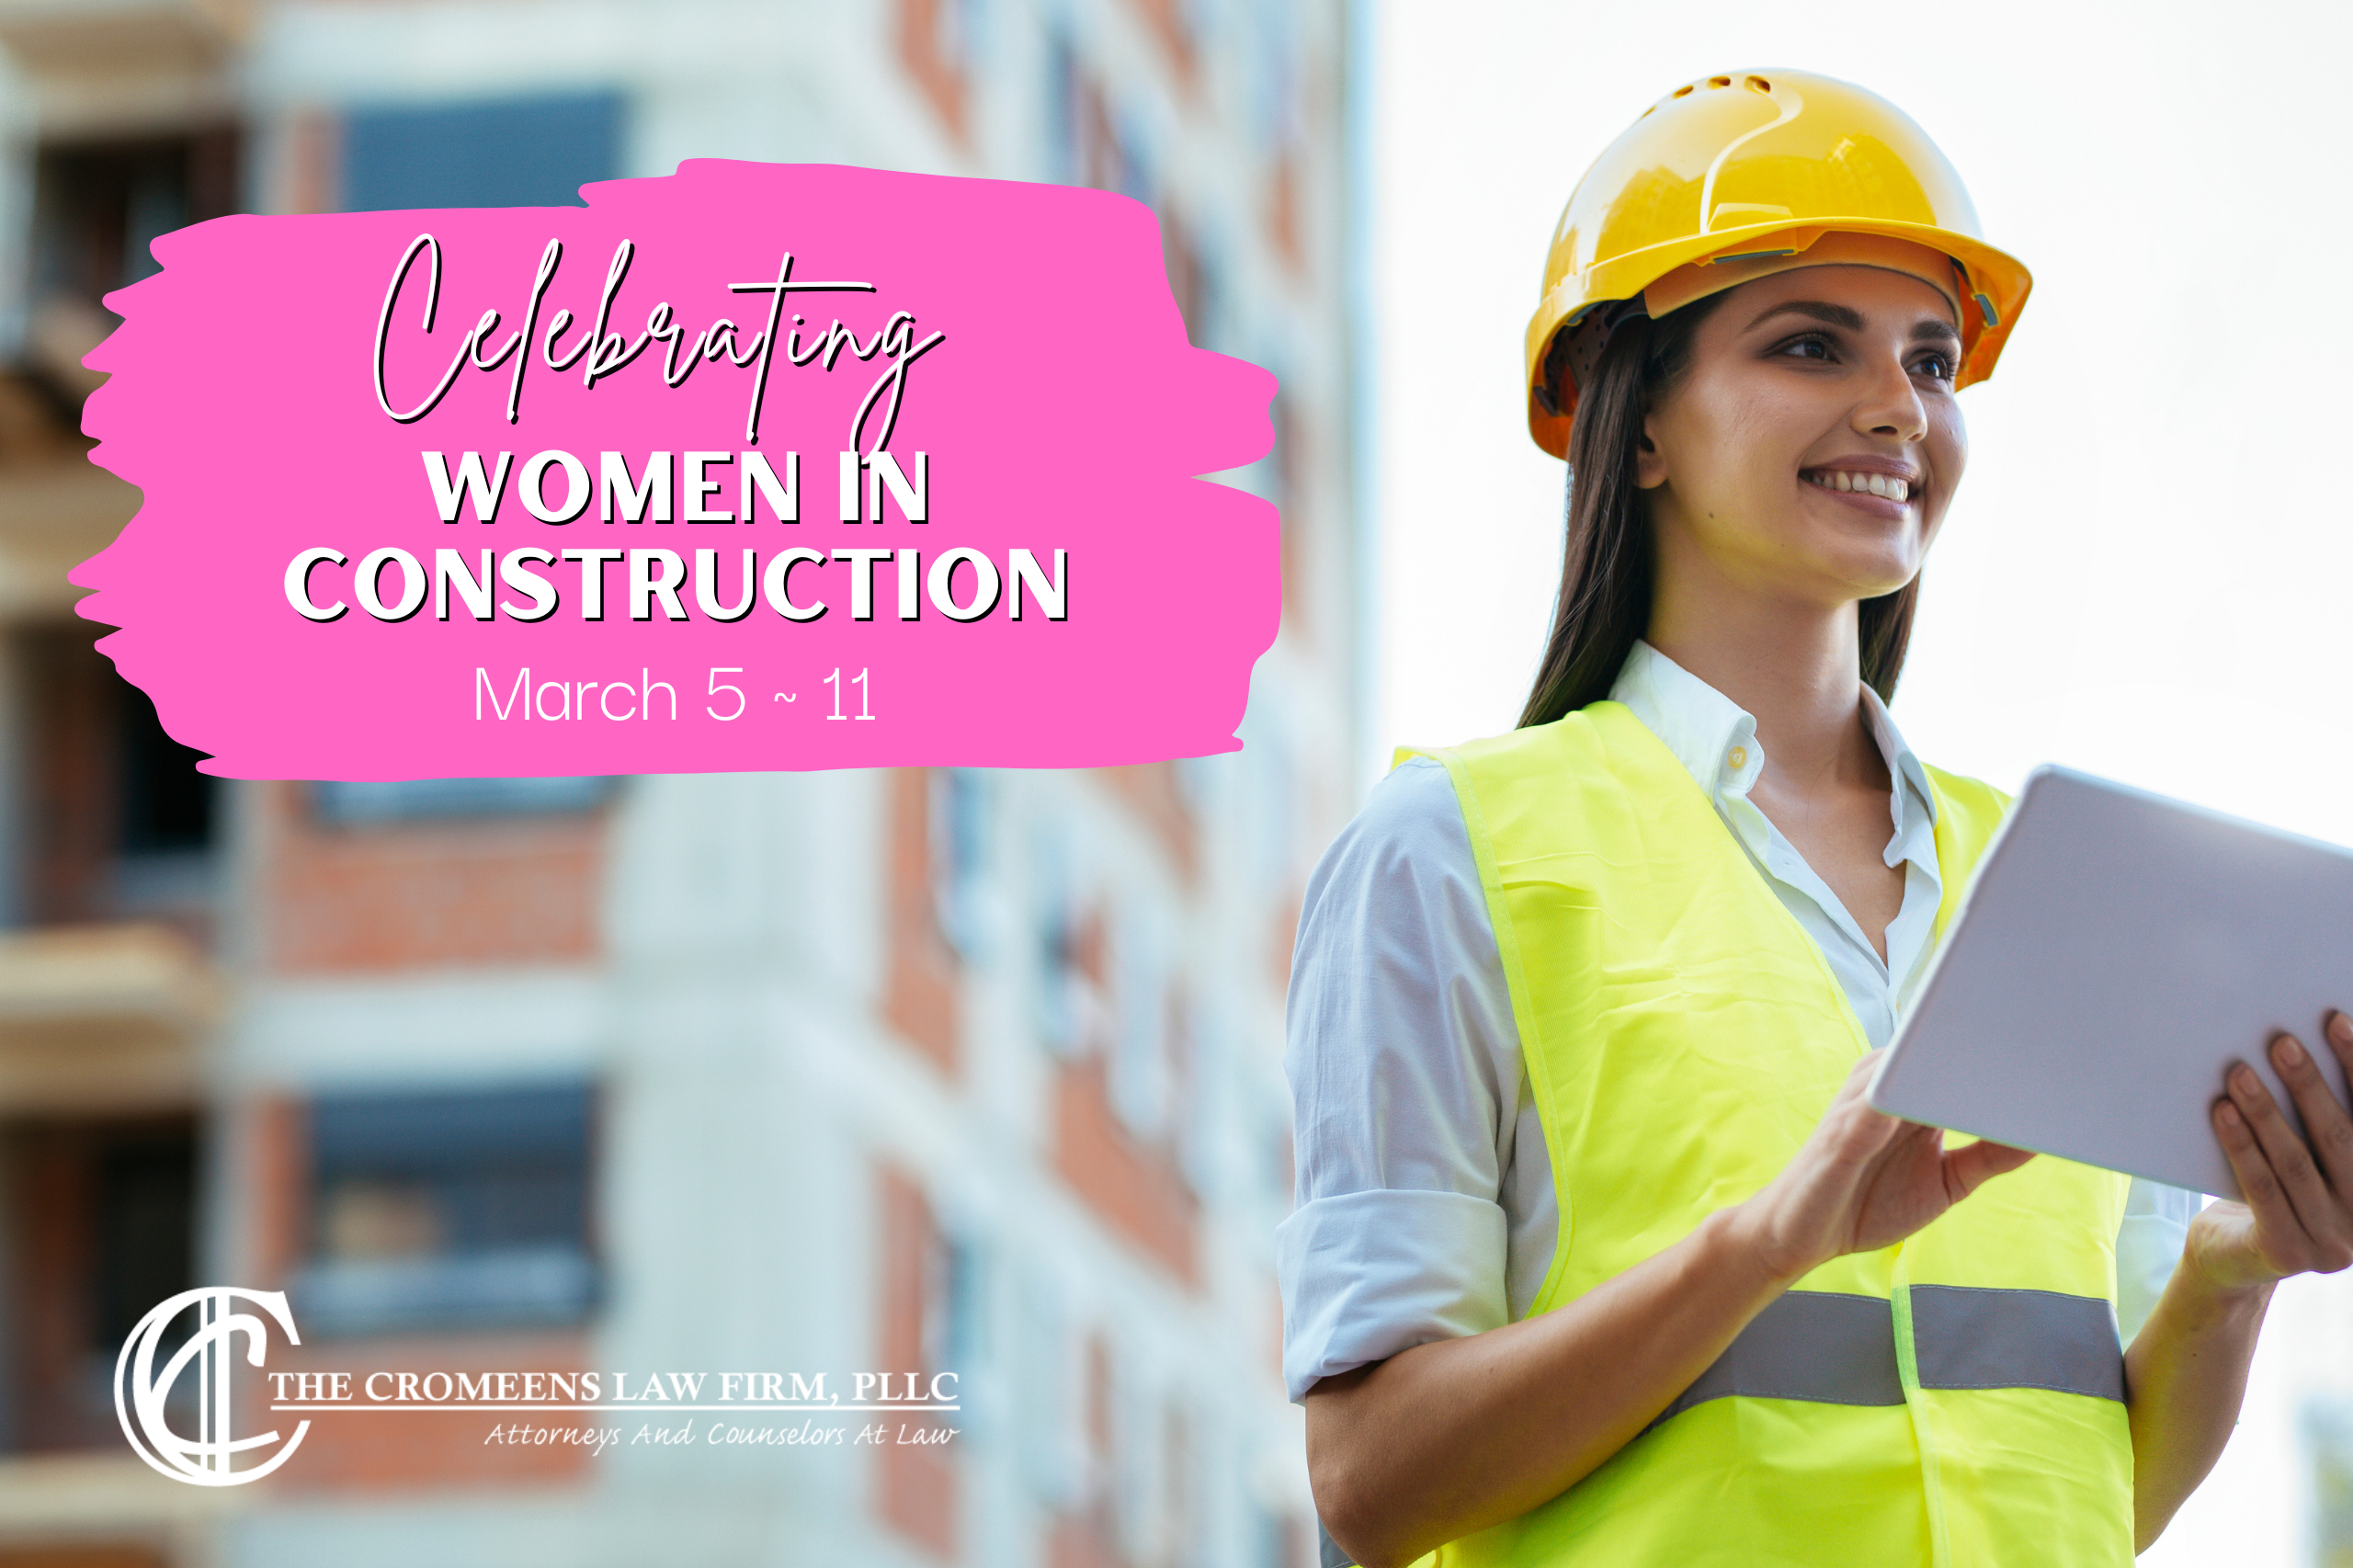 women in construction week